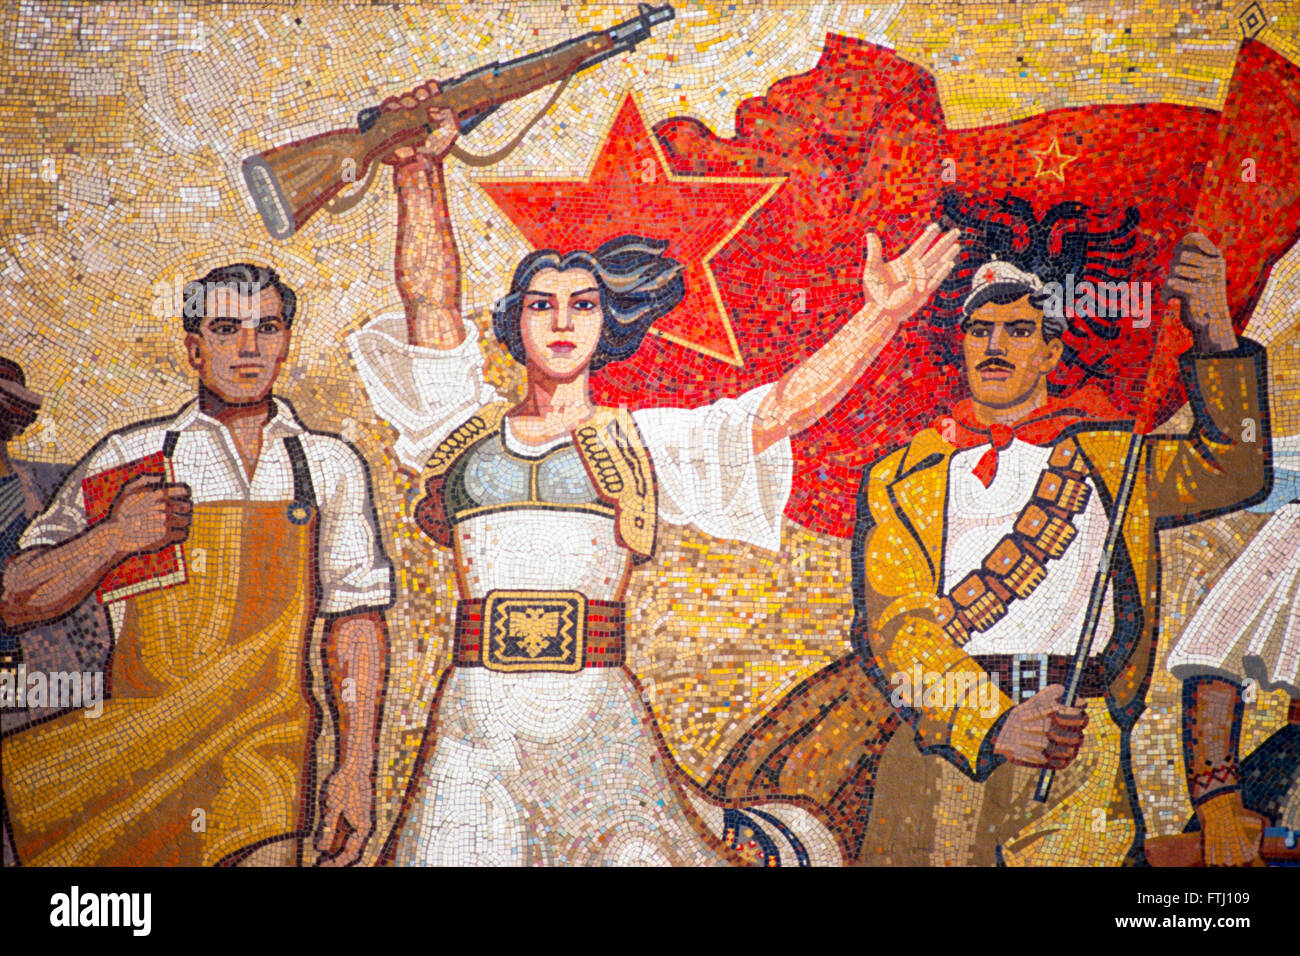 A heroic revolutionary mozaic in the main square, Tirana, 1990 Stock Photo